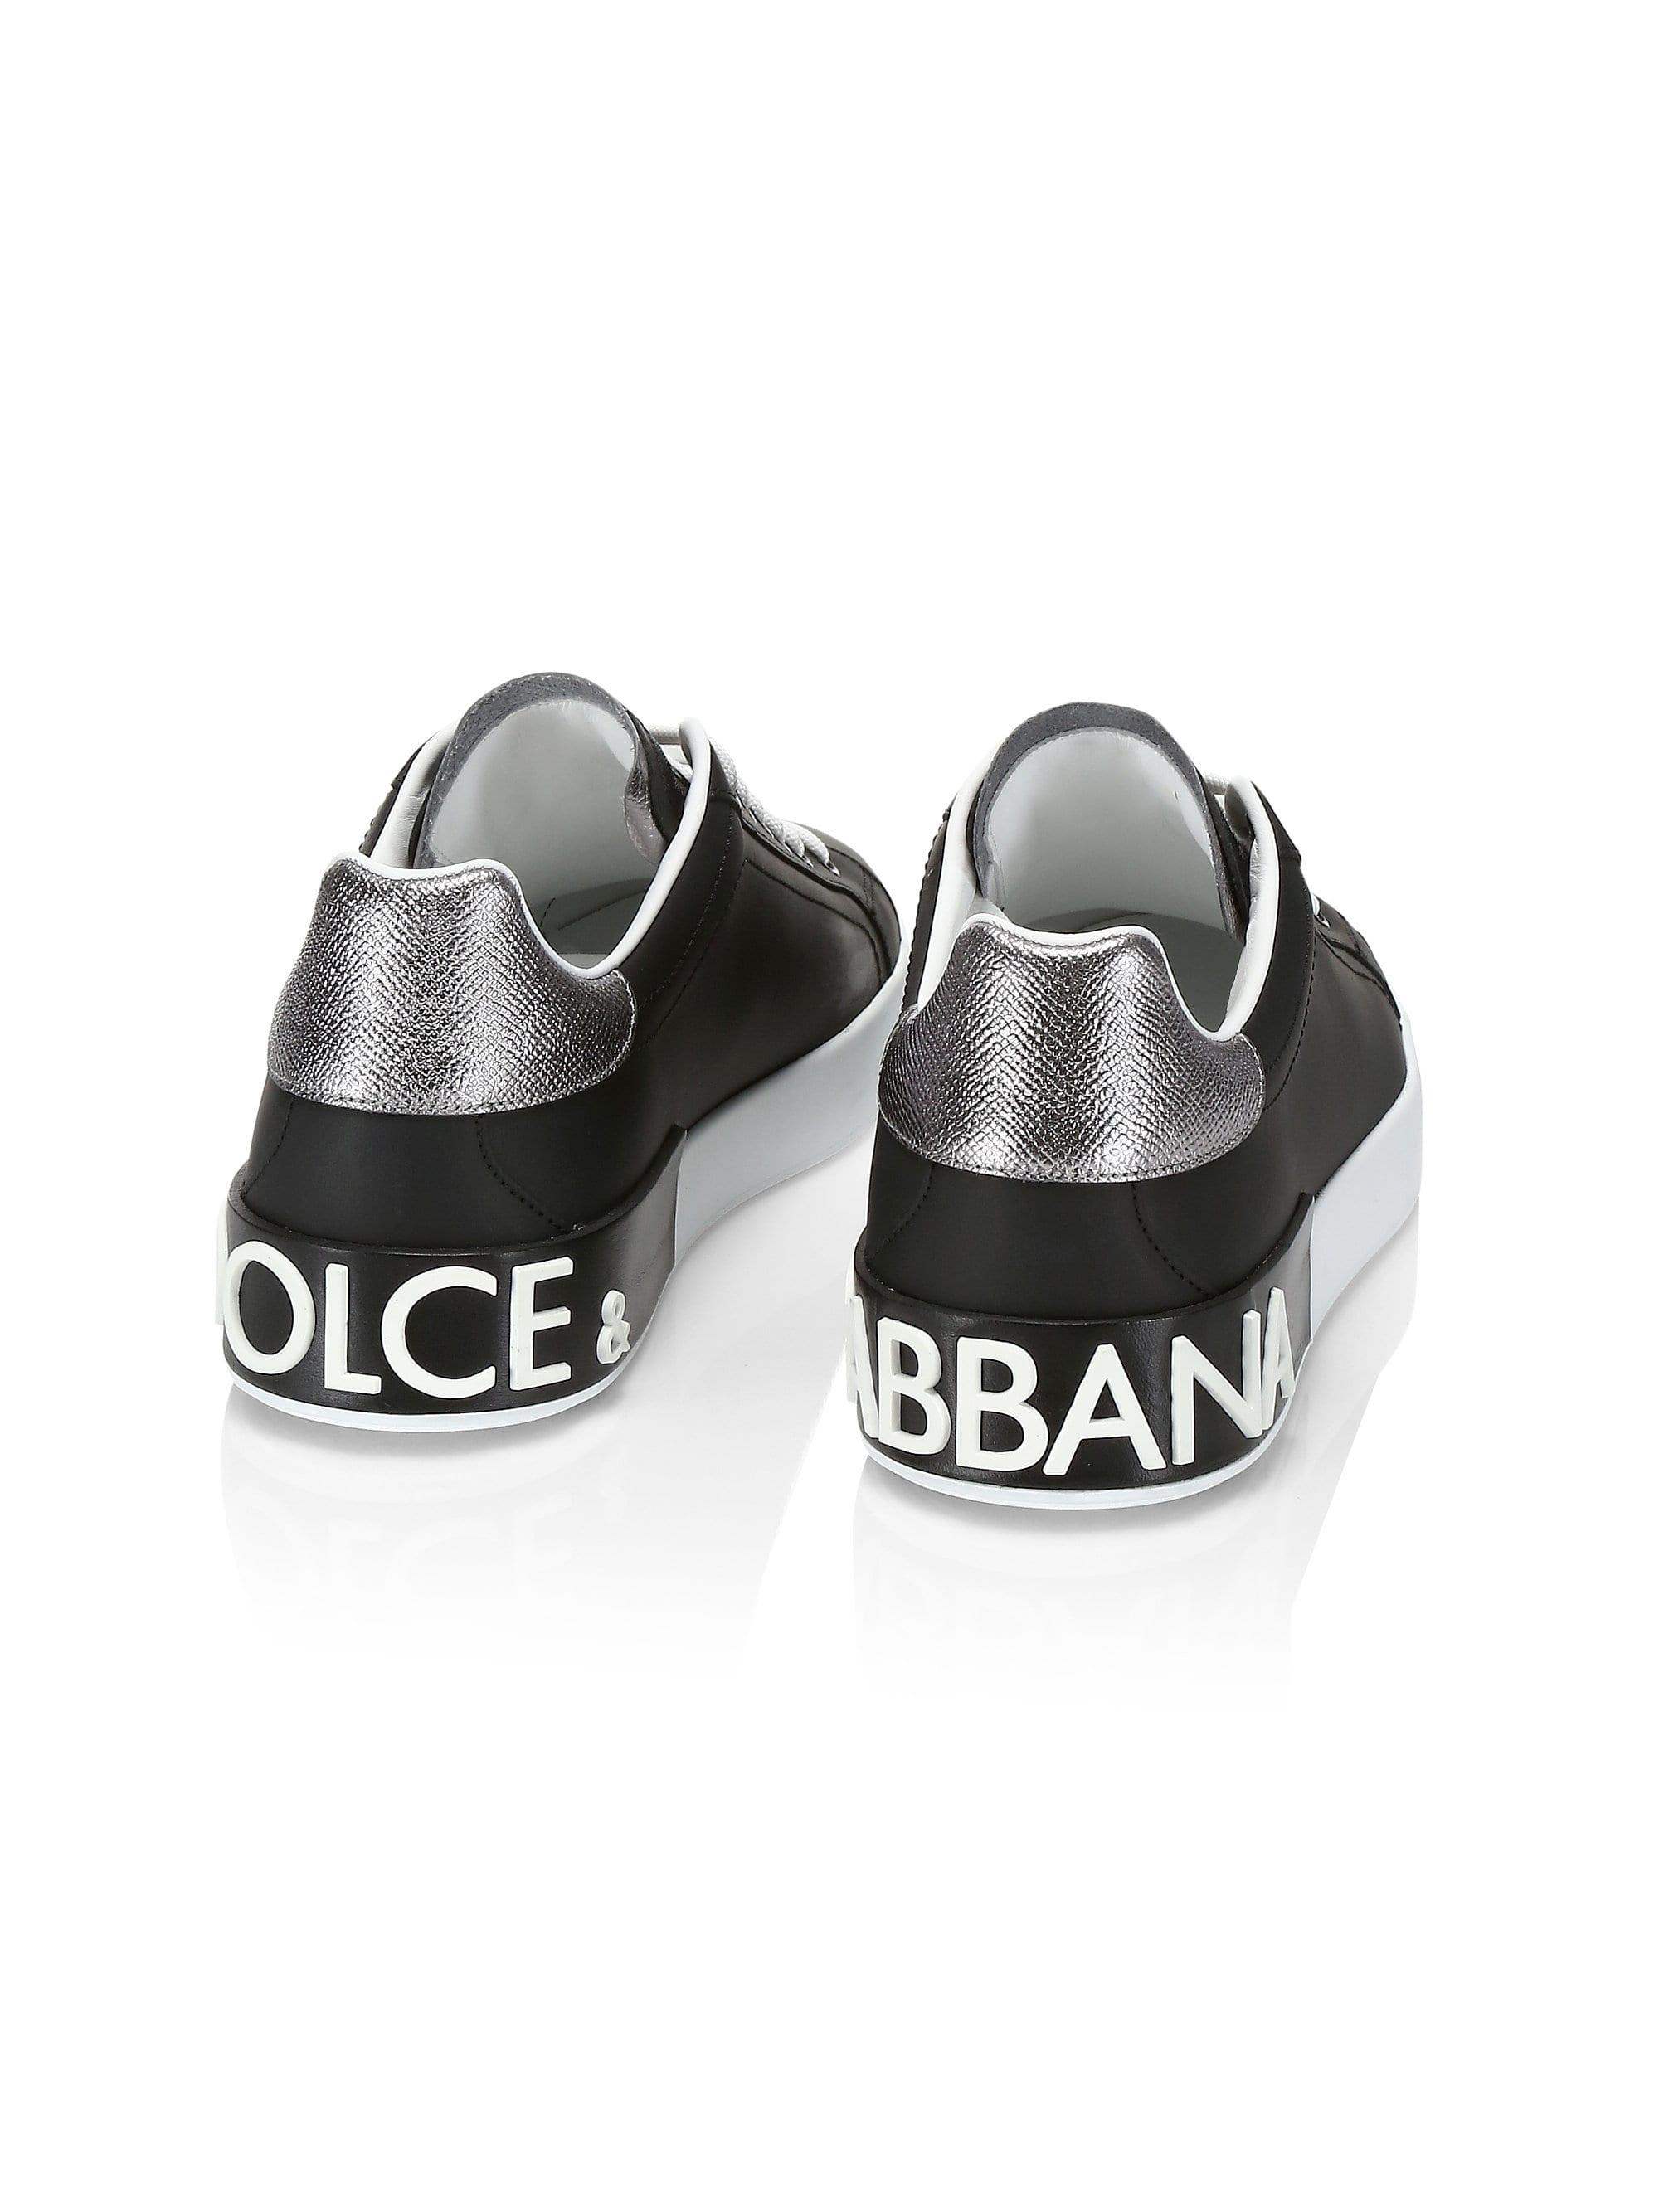 Dolce & Gabbana Portofino Sneakers in Black for Men - Lyst